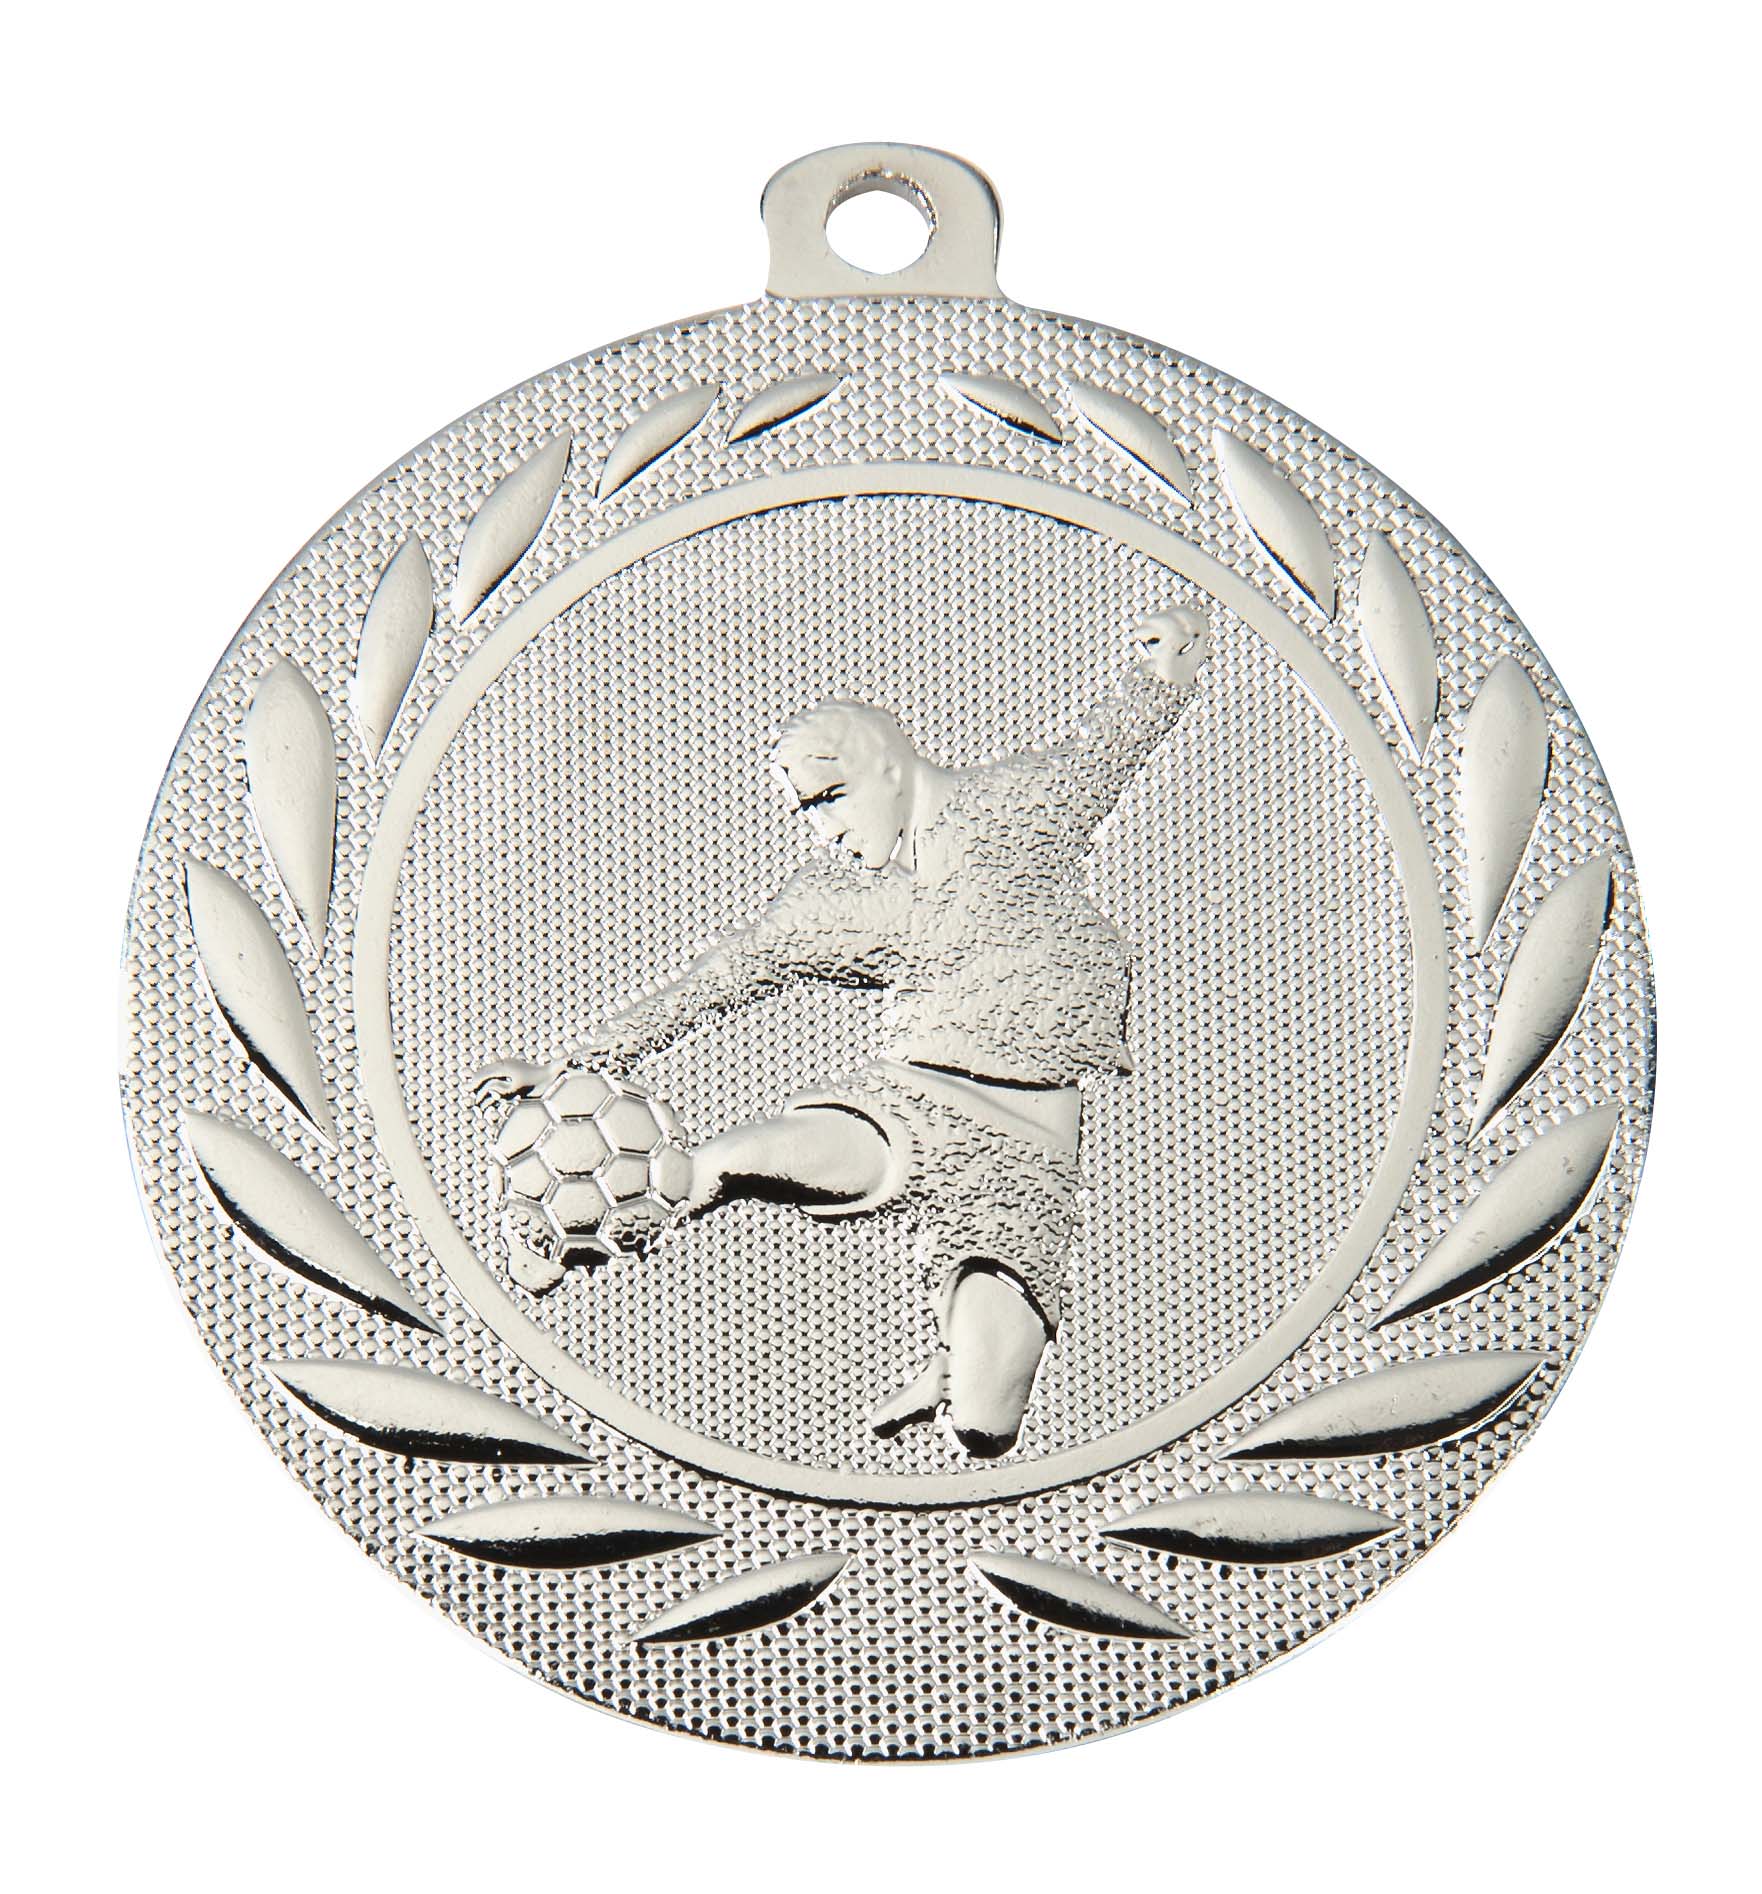 Fußball Medaille DI5000C inkl. Band u. Beschriftung  Silber Fertig montiert gegen Aufpreis